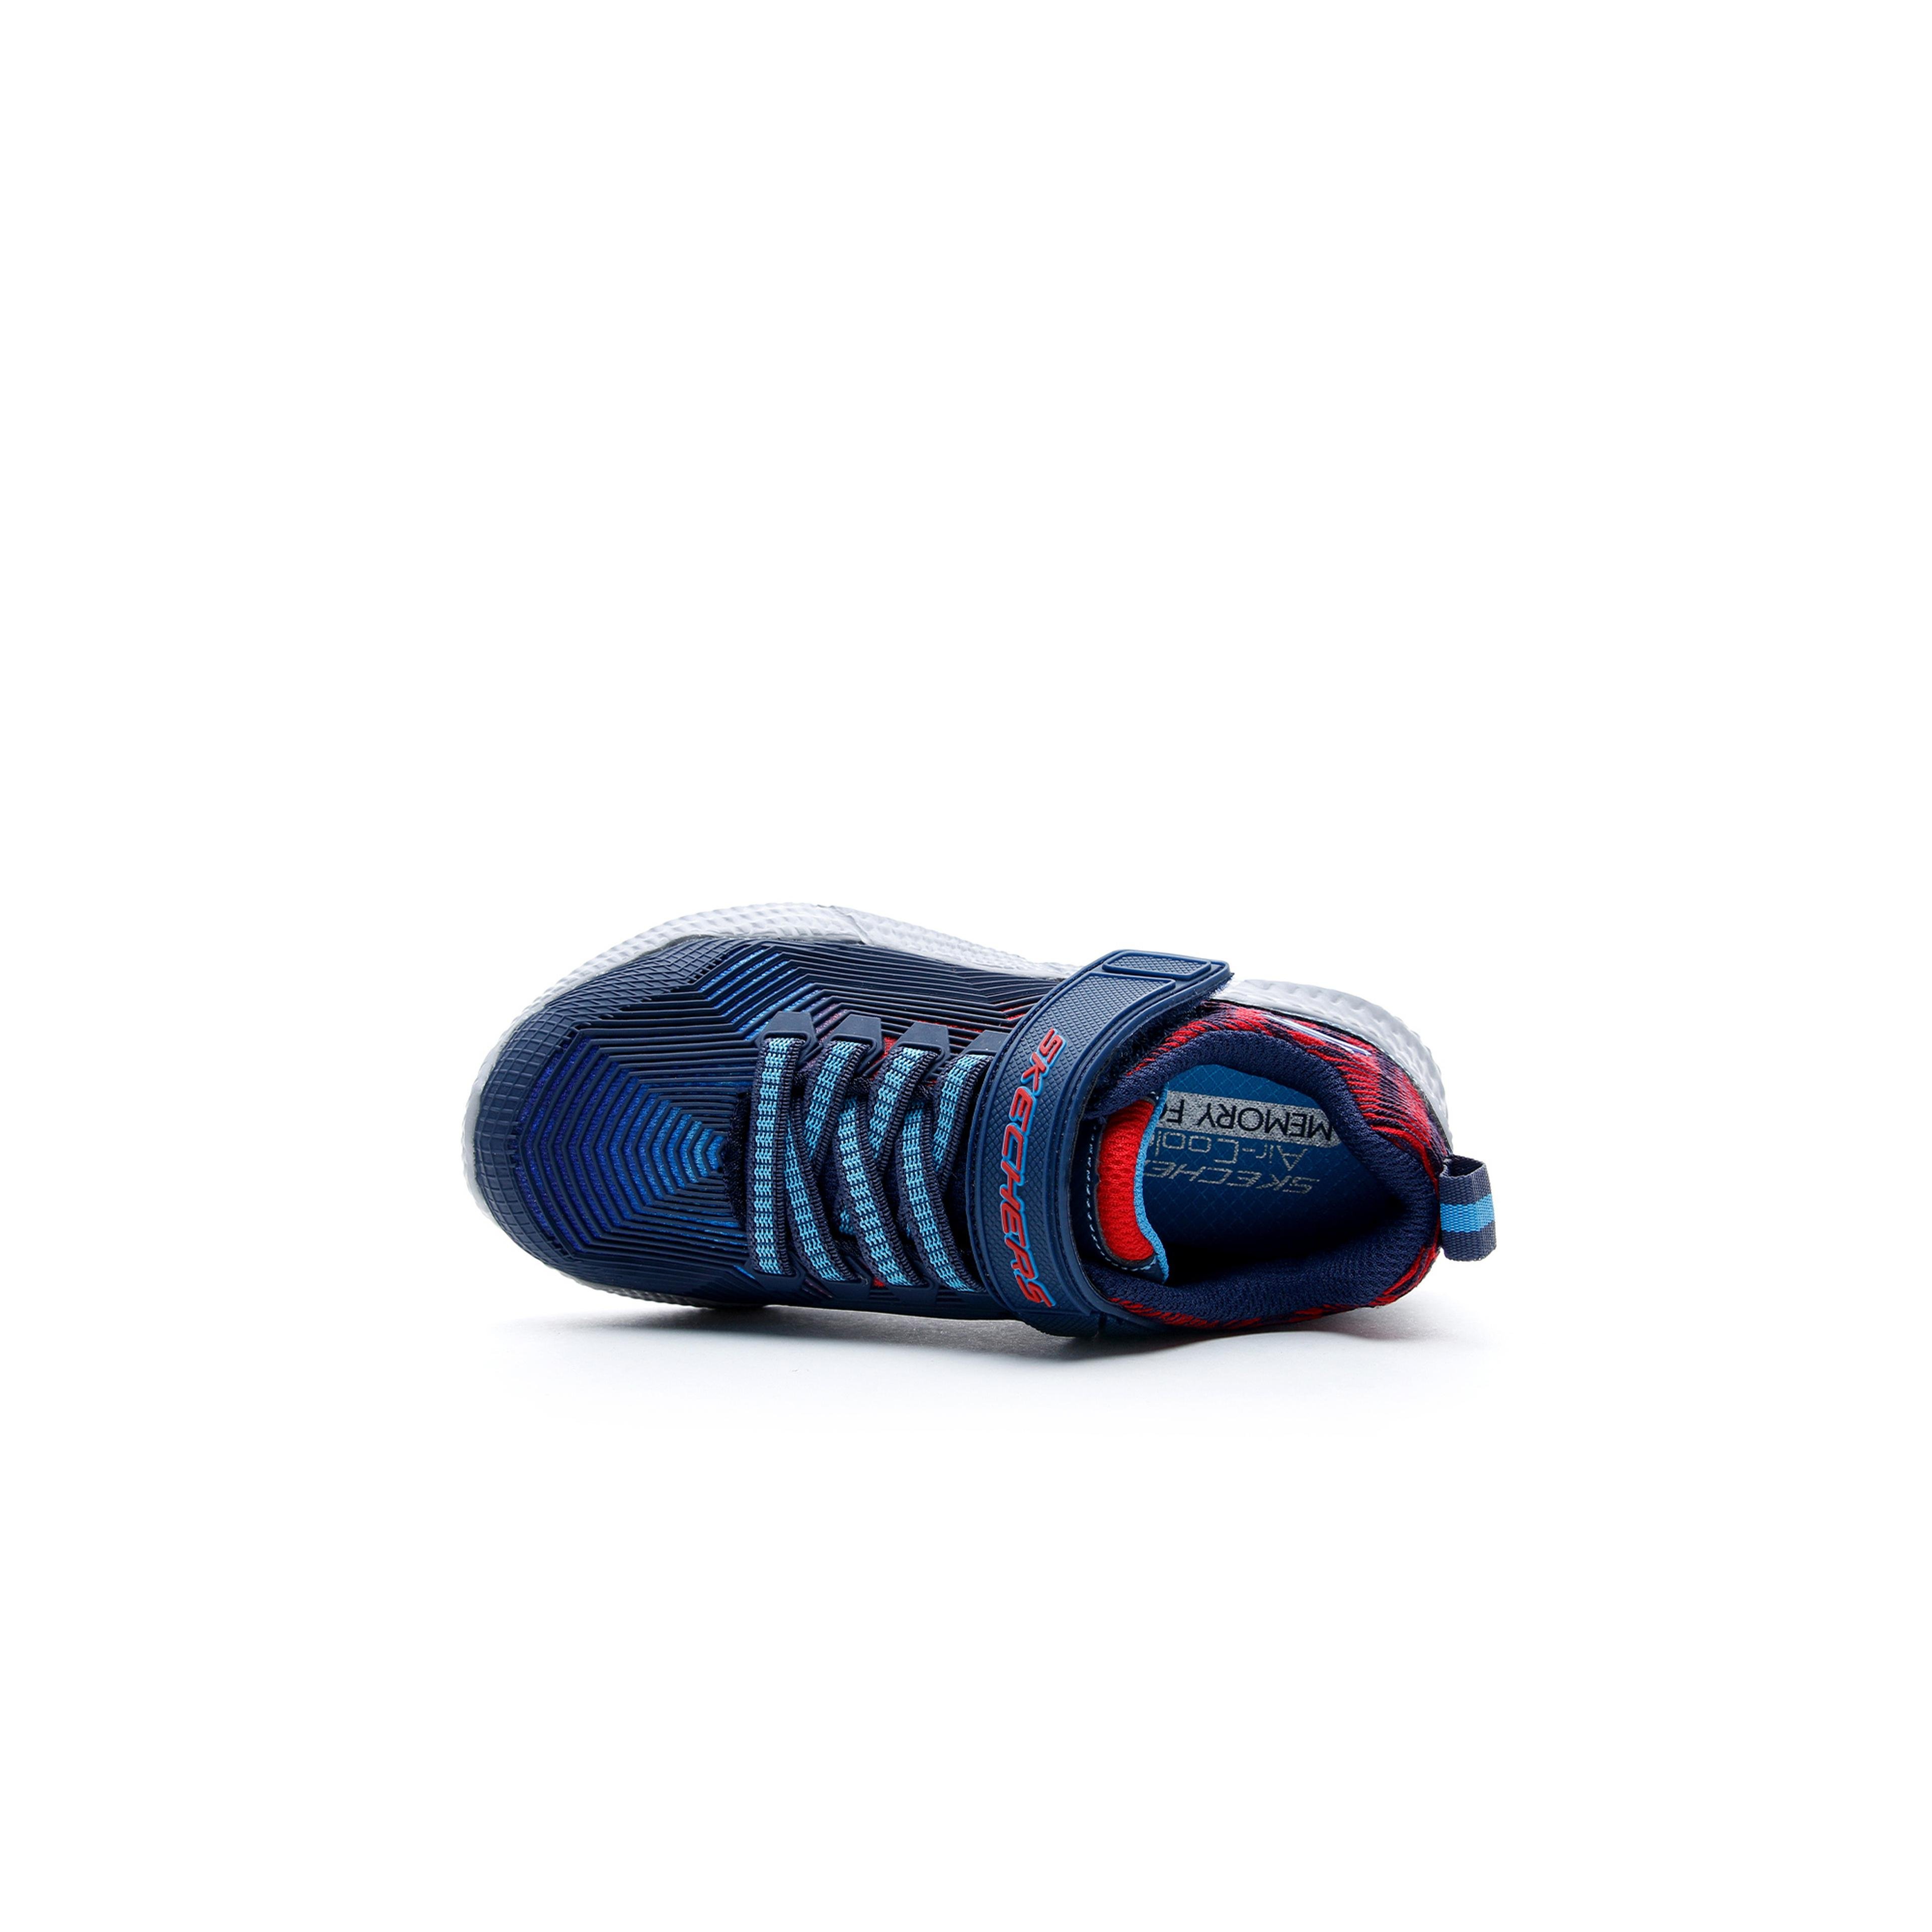 Skechers Intersectors - Protofuel Erkek Çocuk Lacivert-Kırmızı Spor Ayakkabı